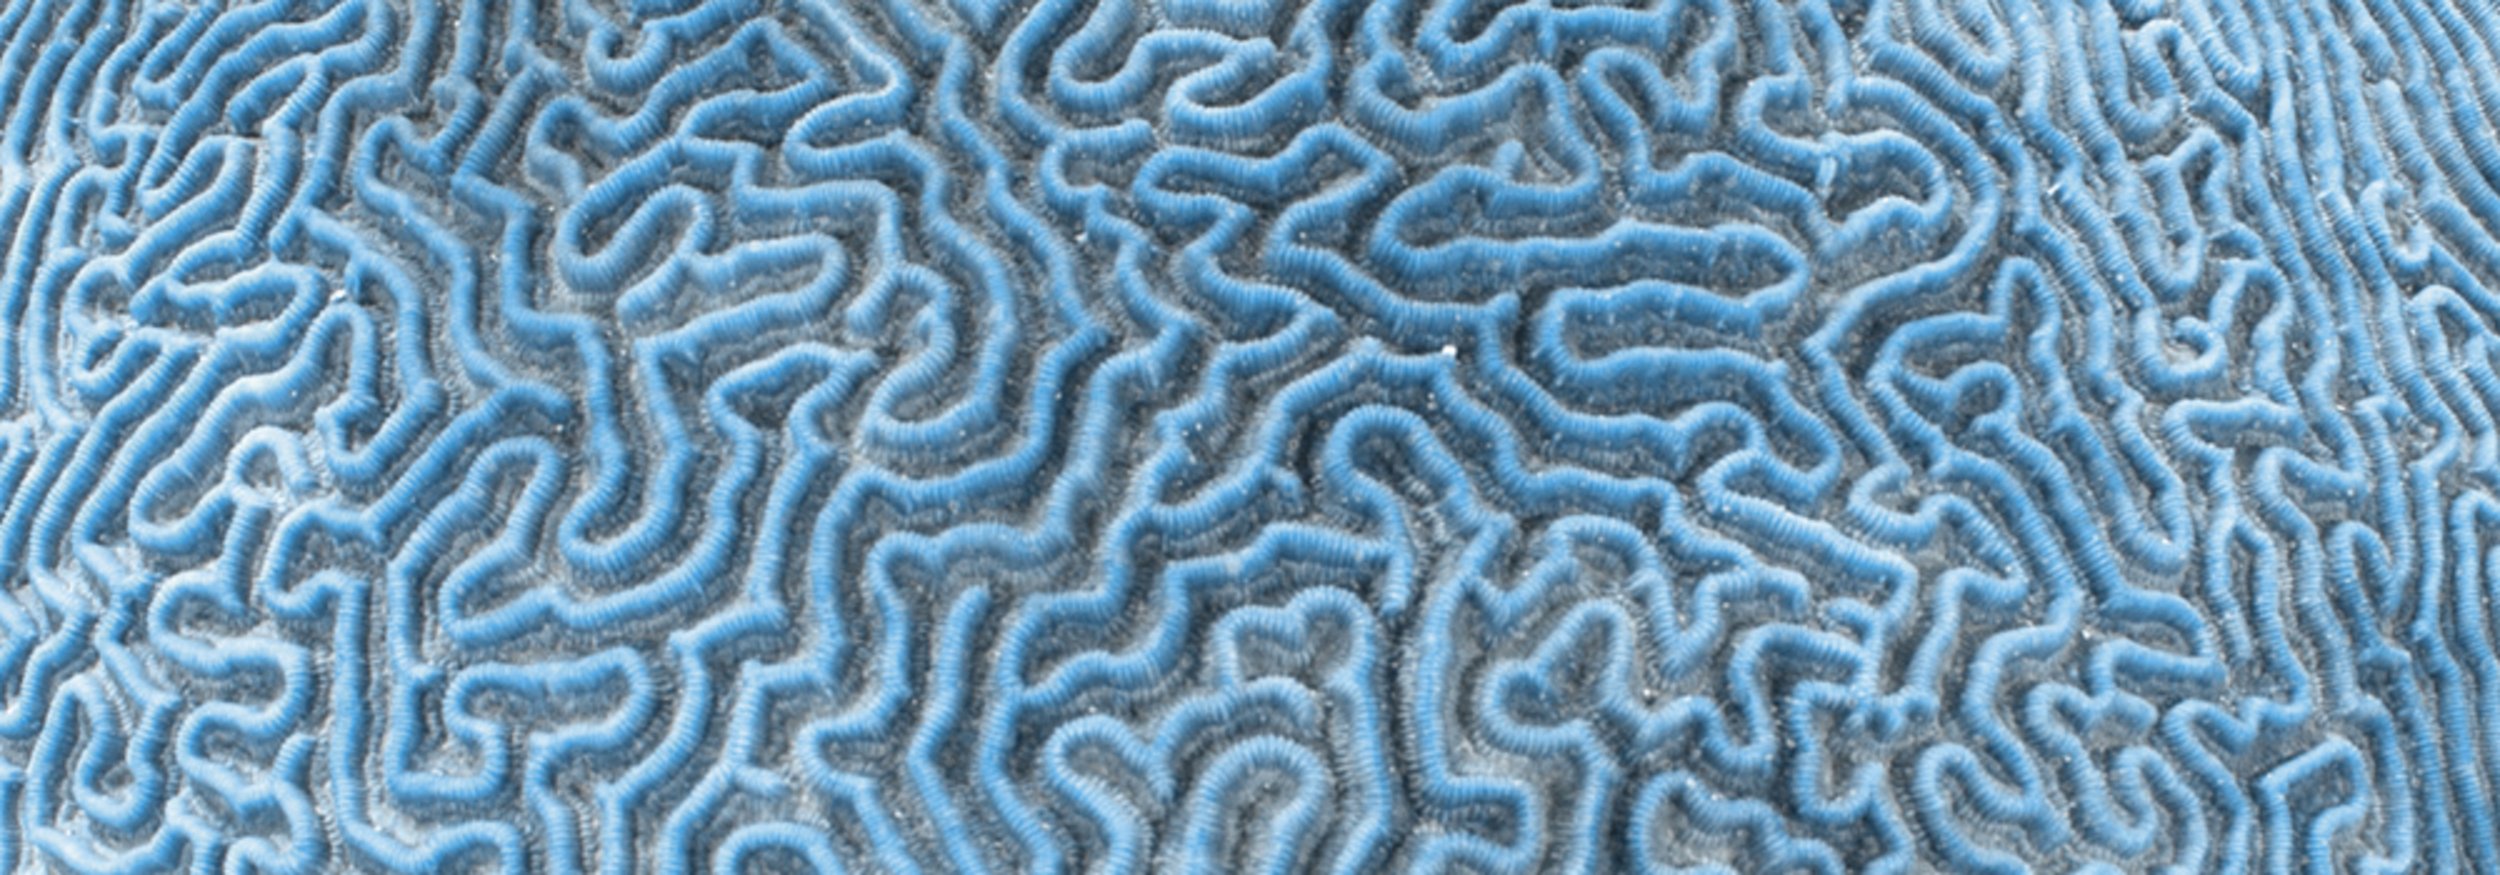 Titelbild der Methodenseite, Detailansicht einer Koralle